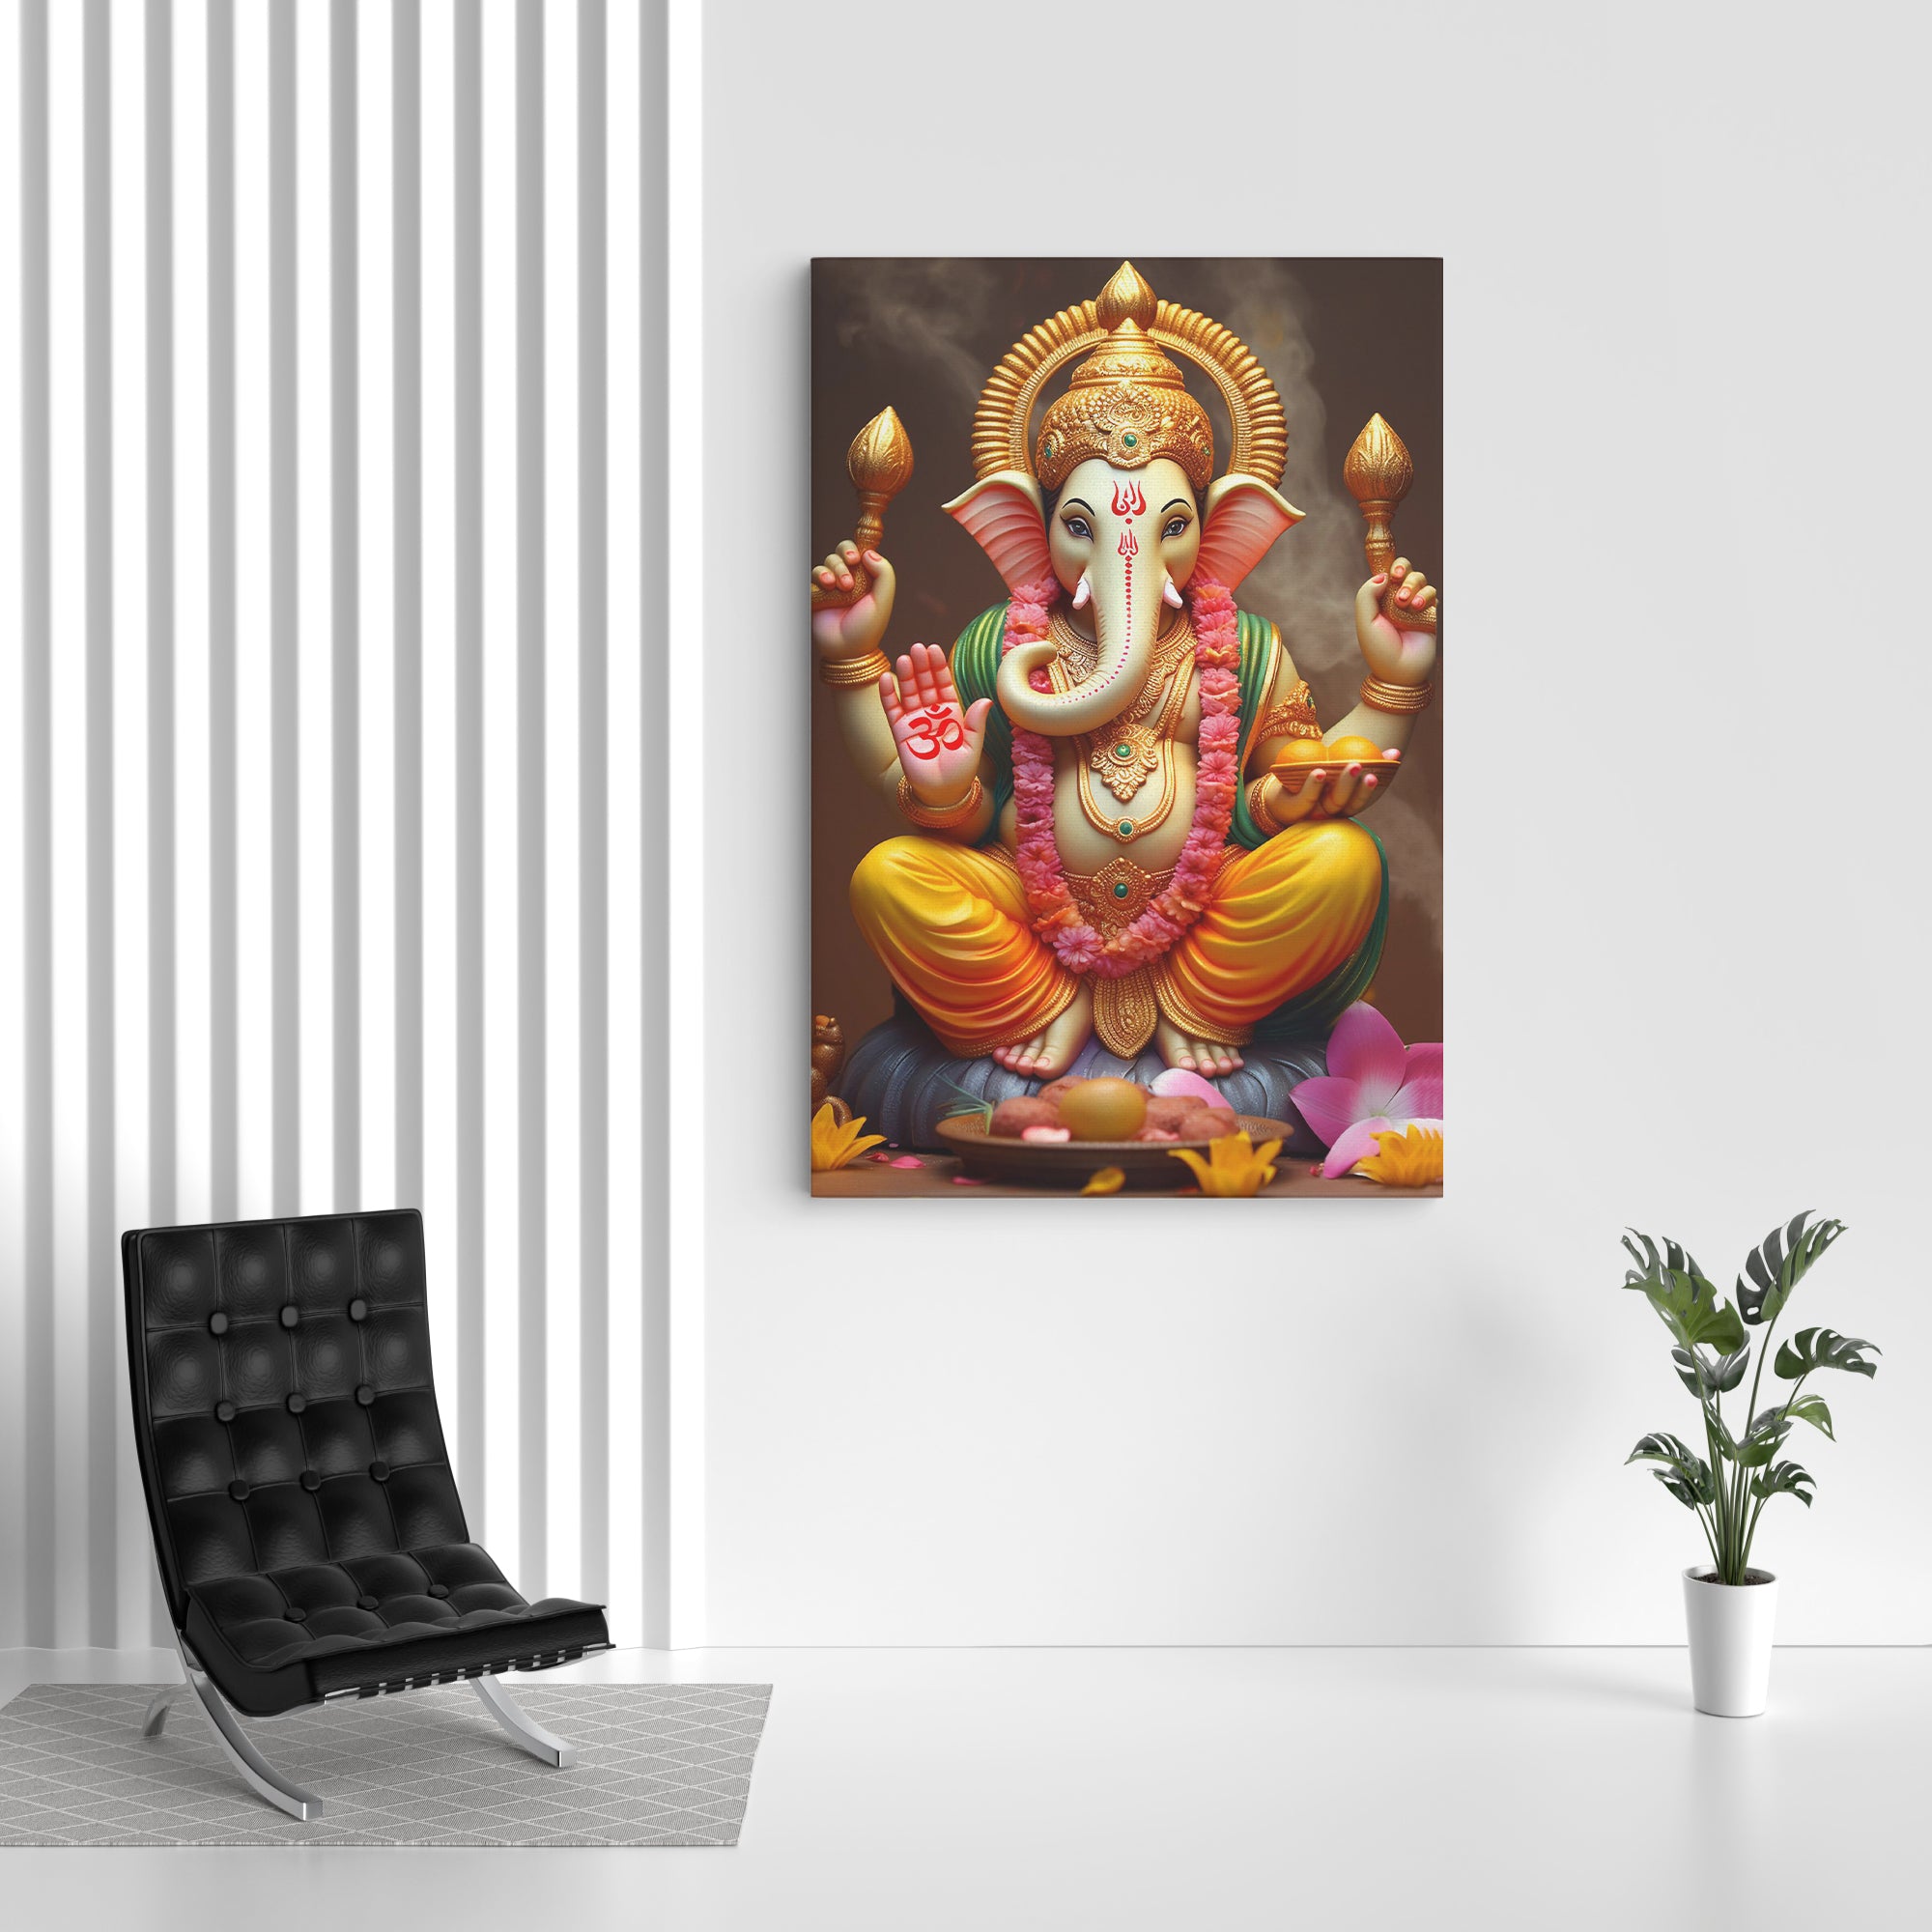 Lord Ganesha Canvas Wall Painting